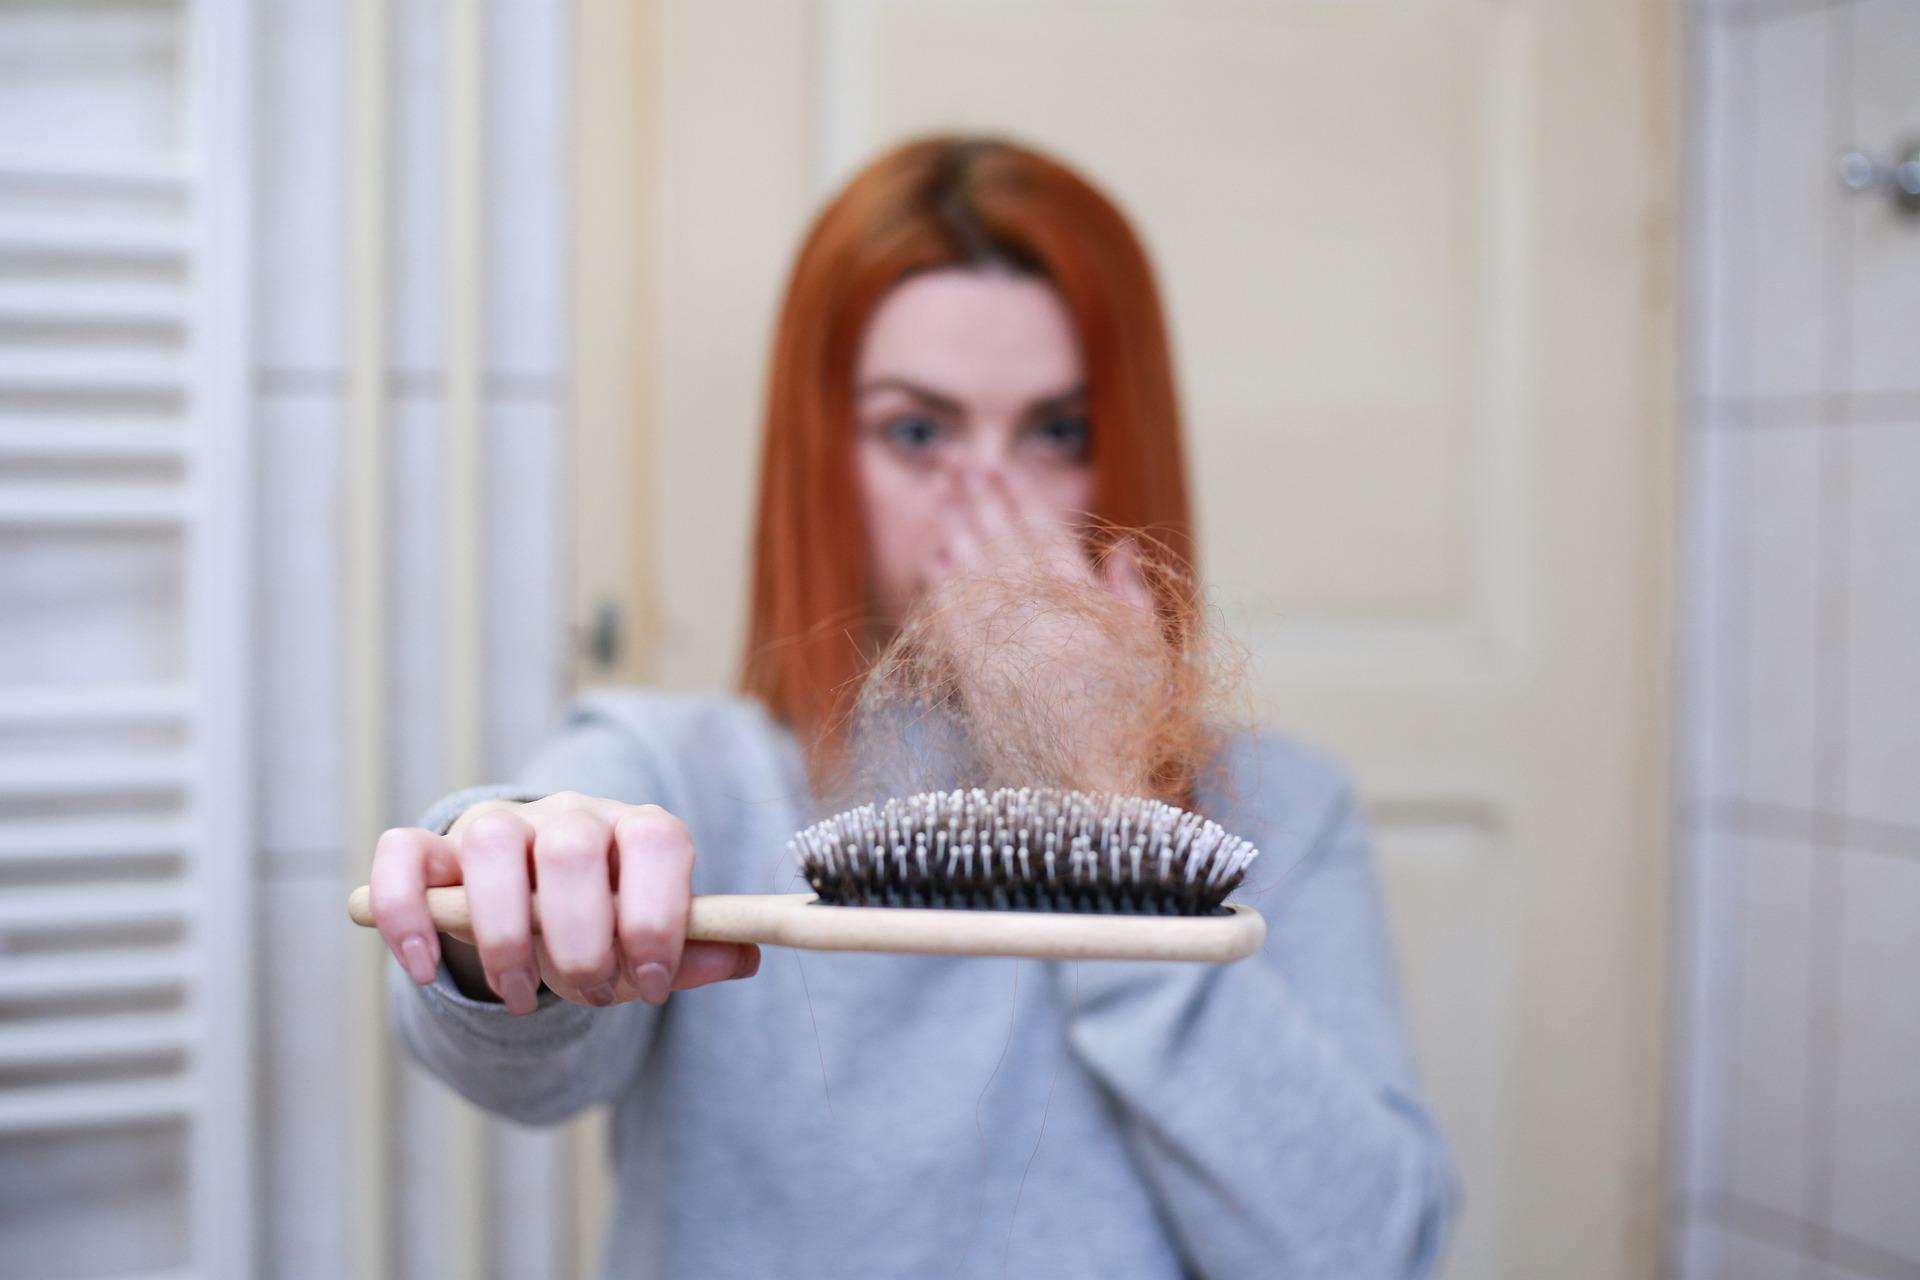 11 سبب رئيسي لتساقط الشعر عند النساء وطرق الوقاية منه